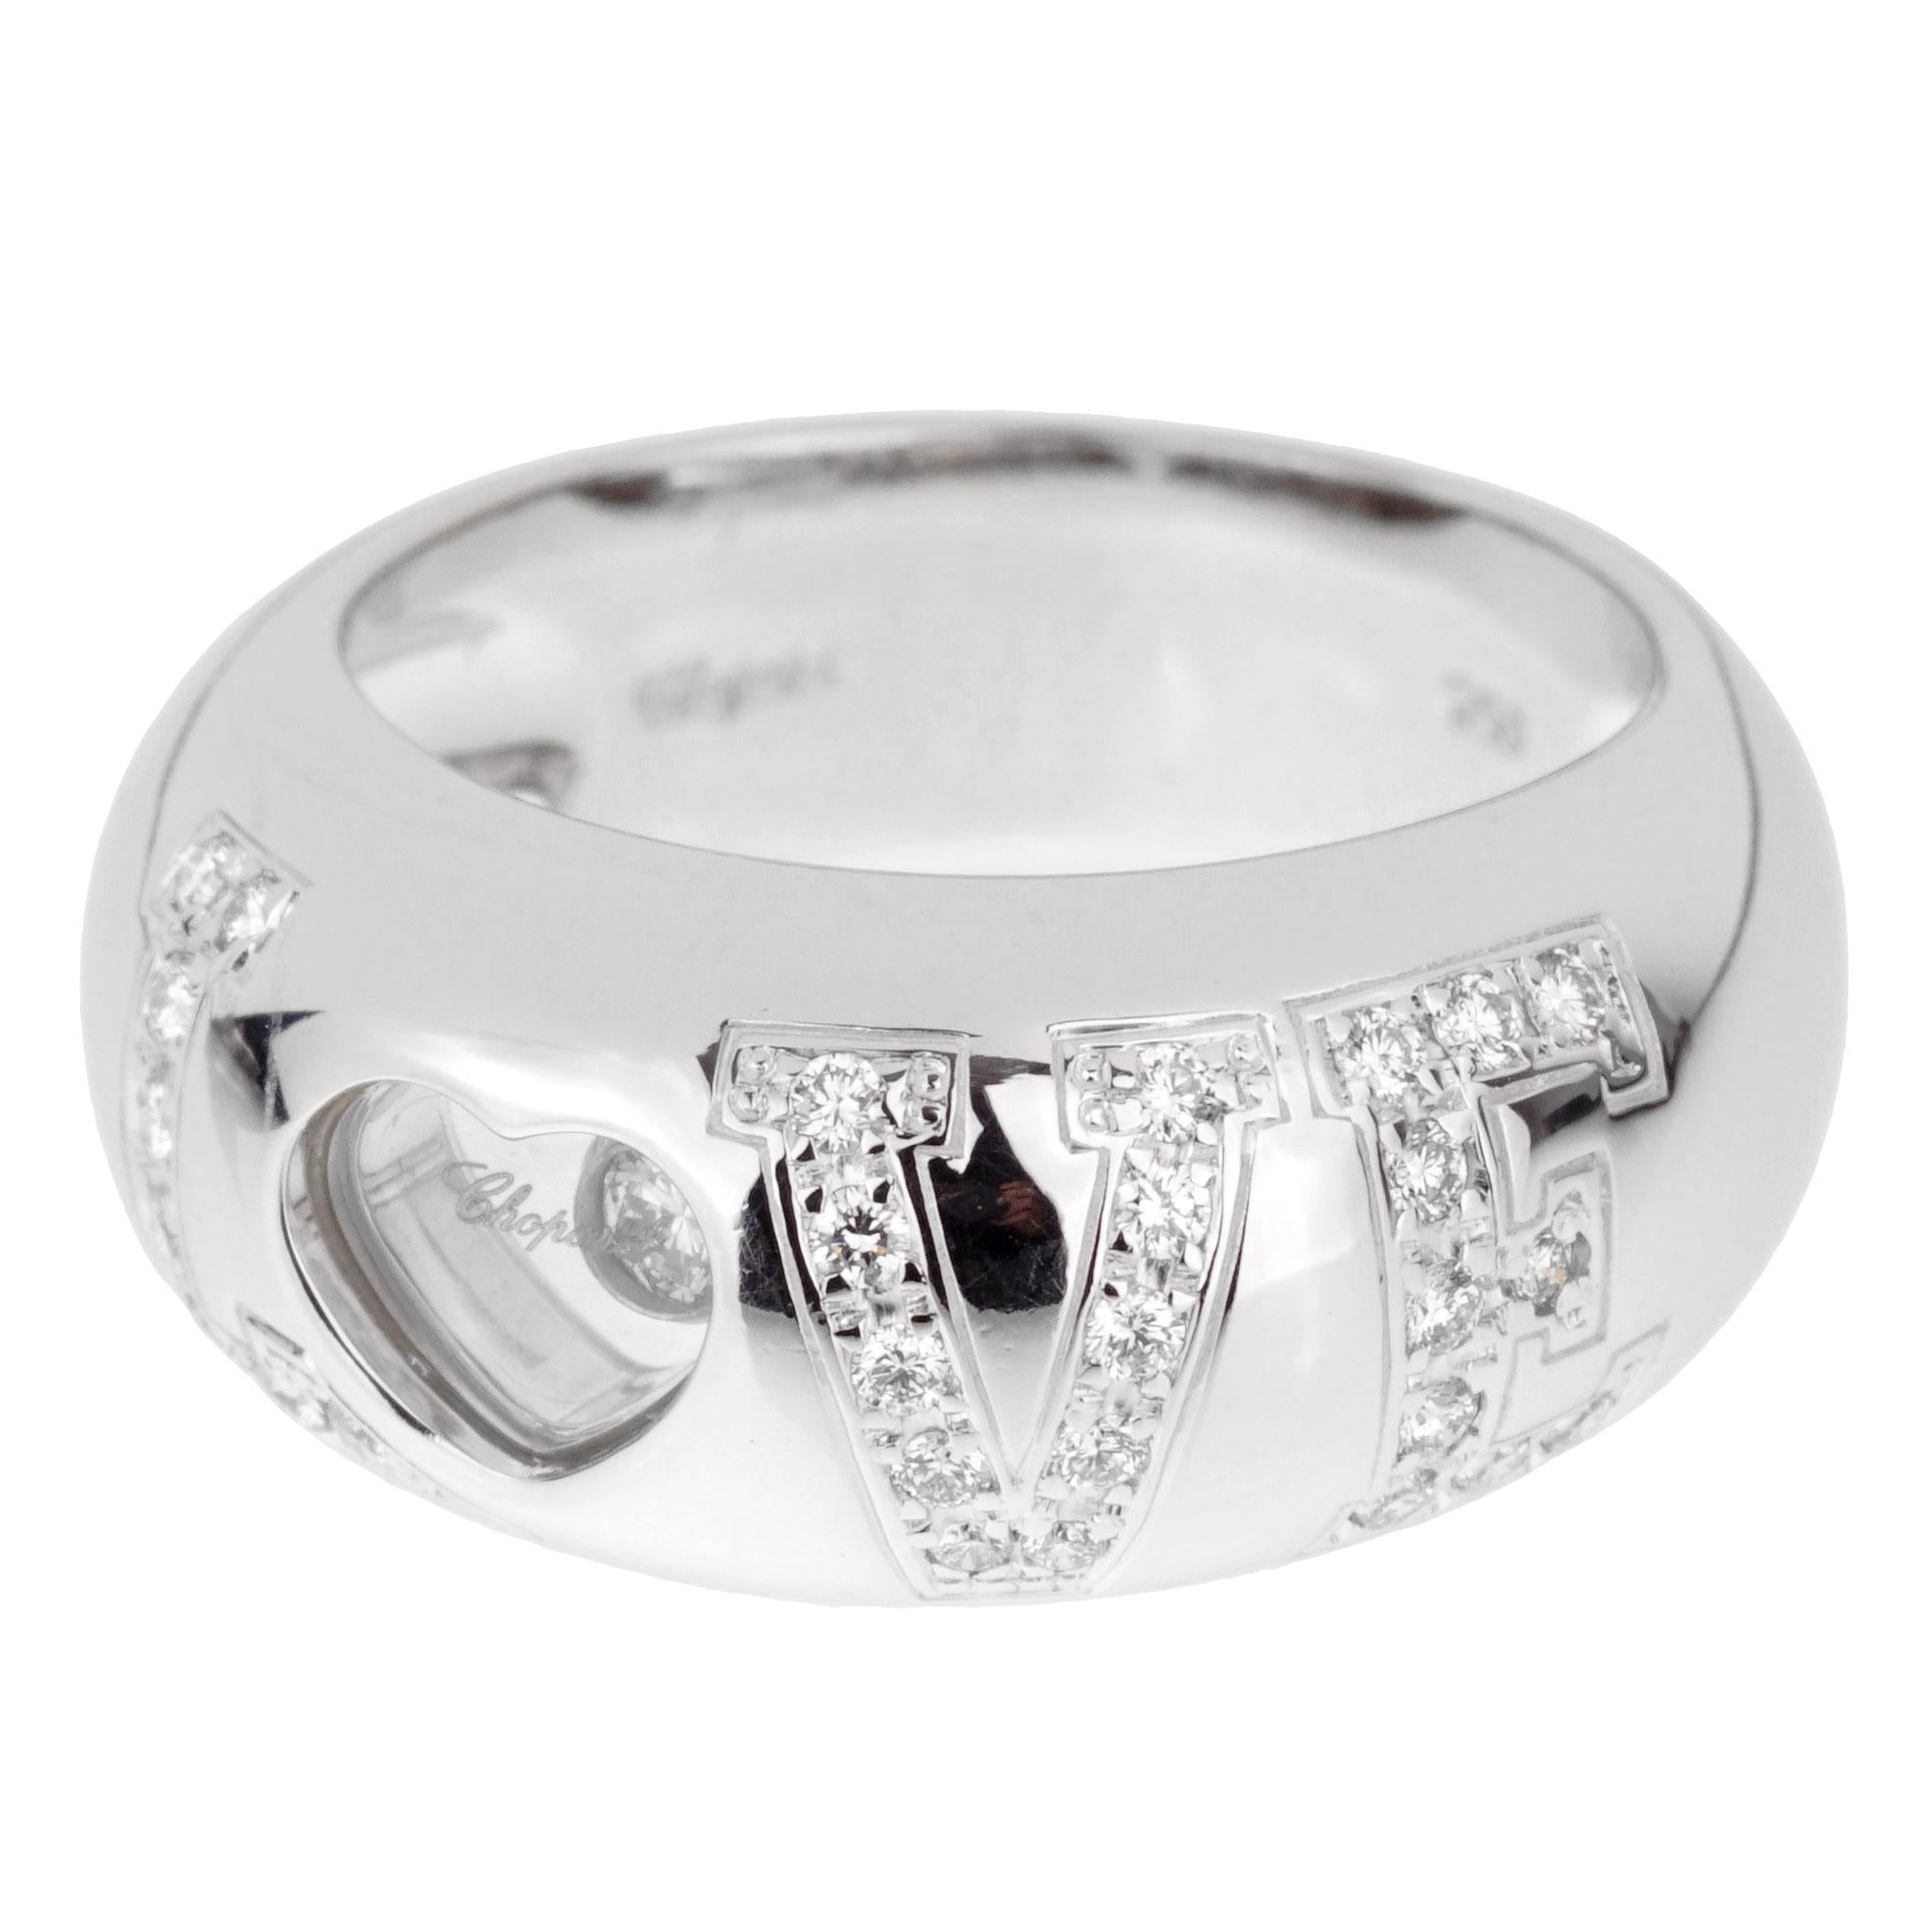 Une fabuleuse bague Chopard happy diamond ornée de diamants ronds de taille brillant en or blanc 18k scintillant. La bague mesure une taille 4 1/2 et peut être redimensionnée.